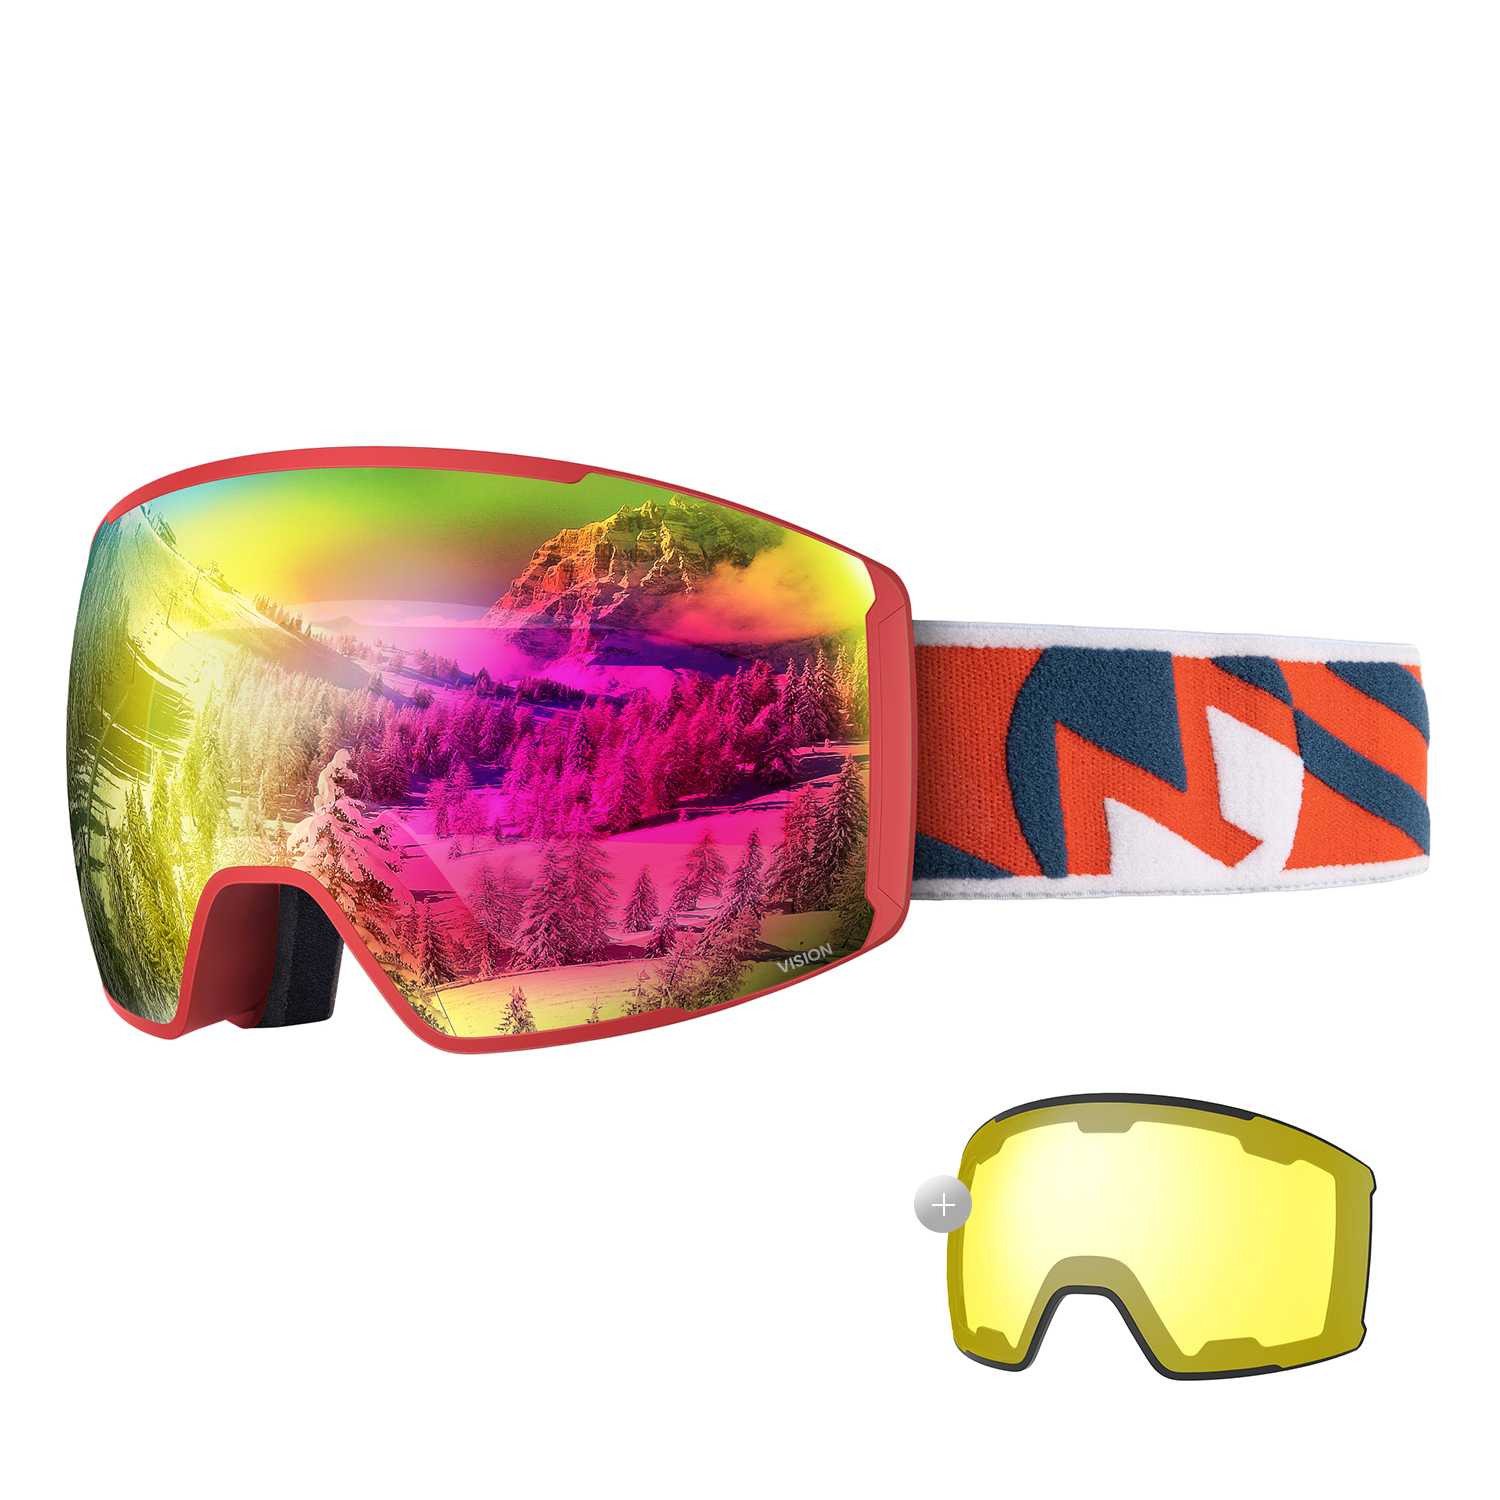 best ski goggles for bright sun